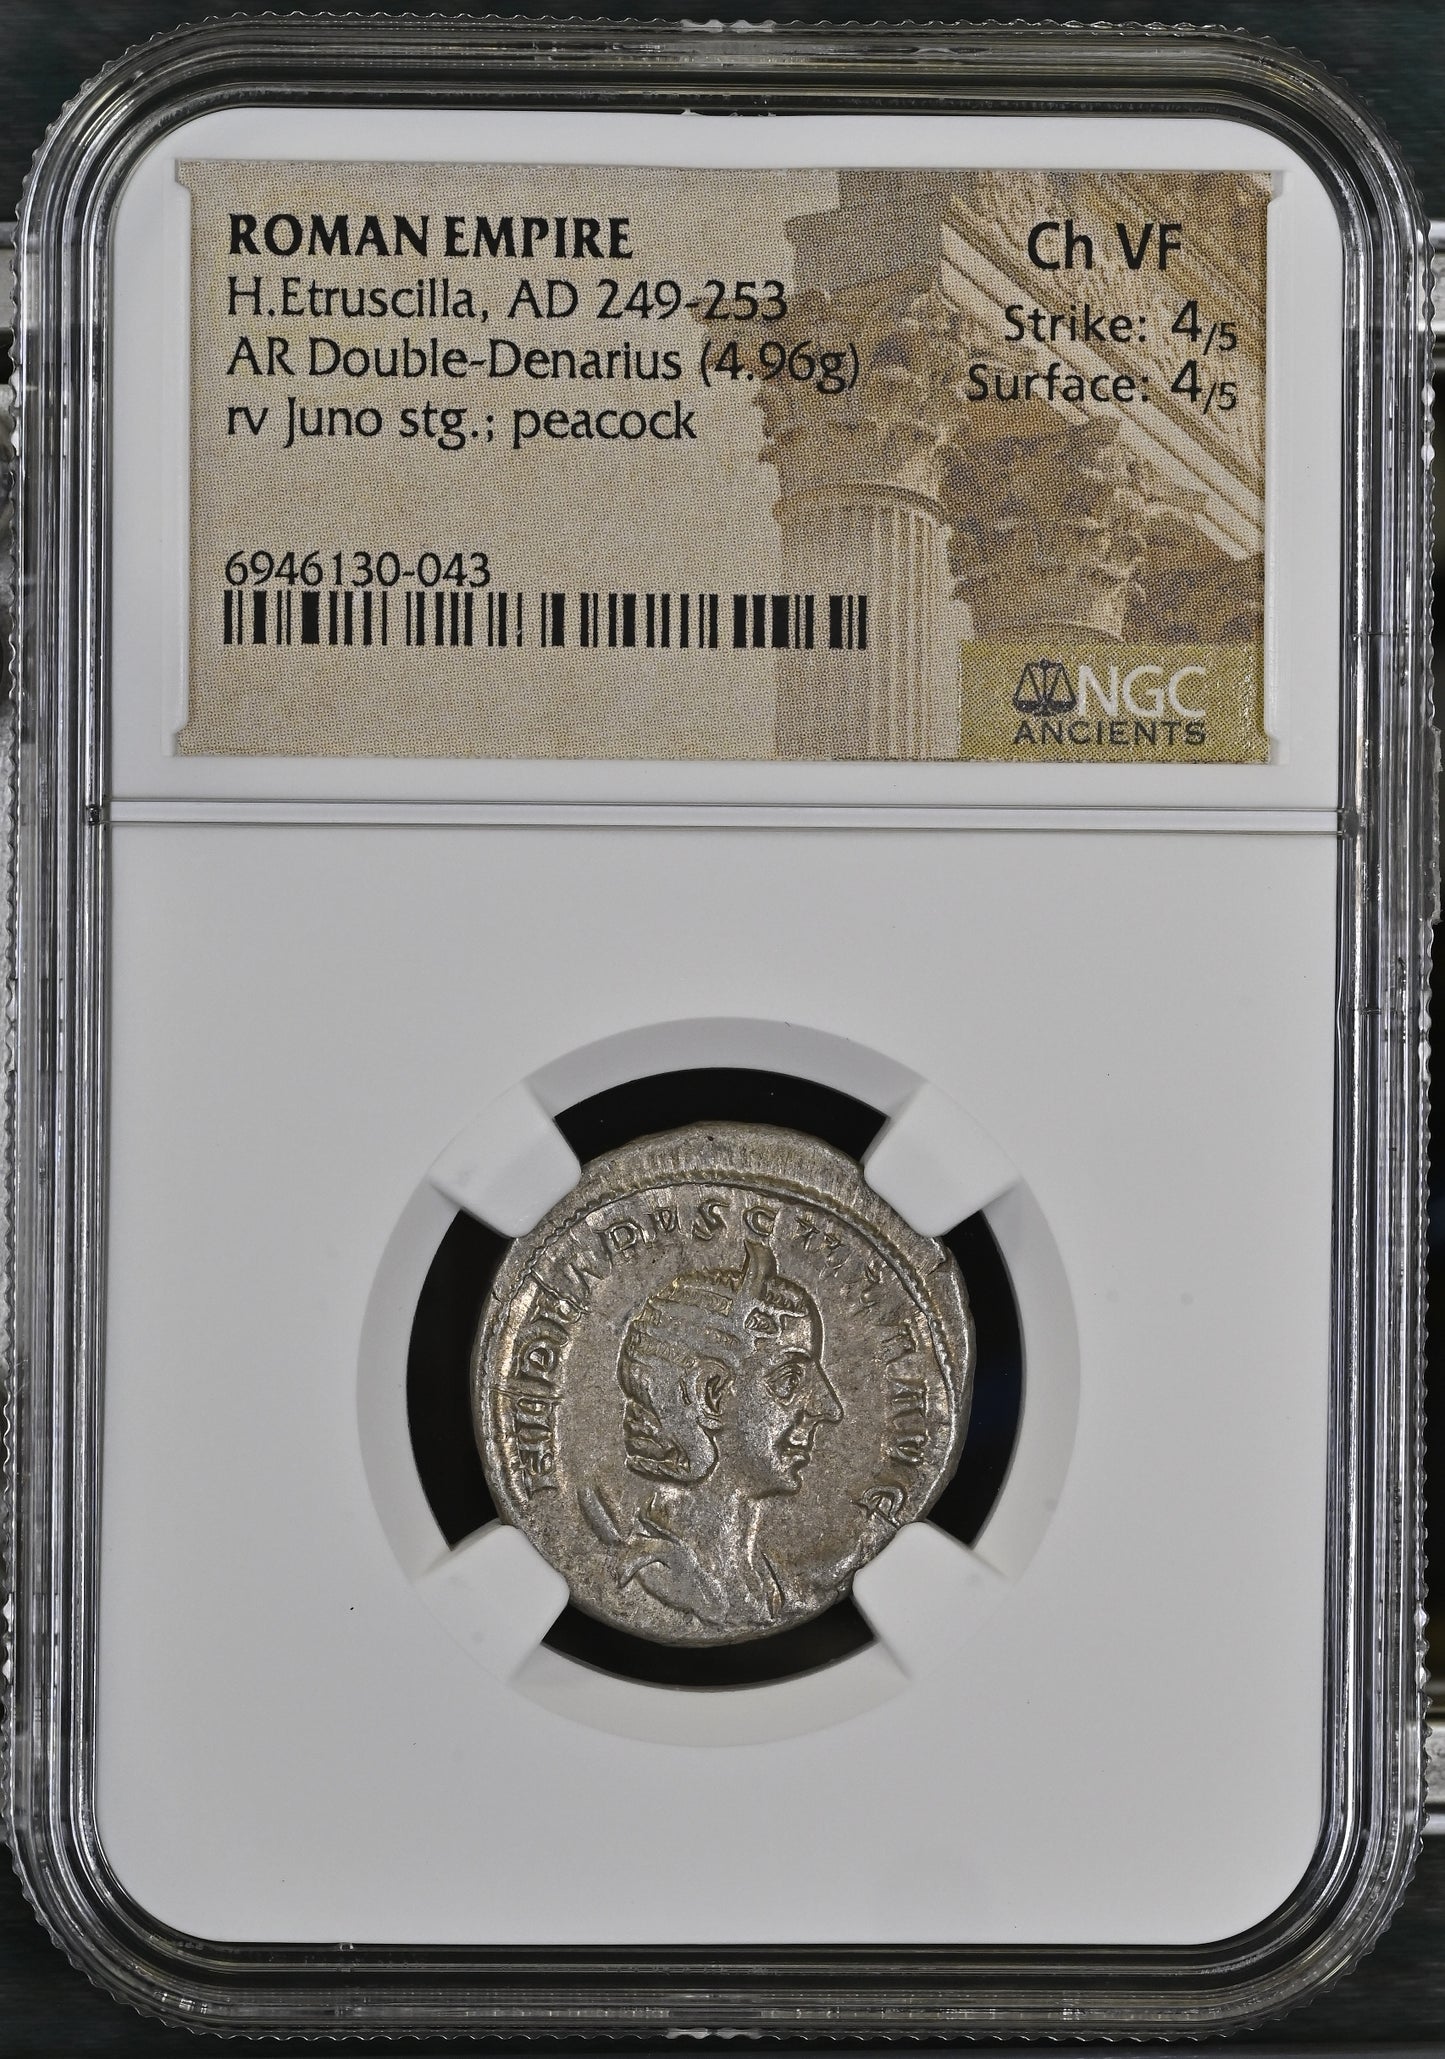 Roman Empire - Herennia Etruscilla - Silver Double-Denarius - NGC Ch VF - RIC:57